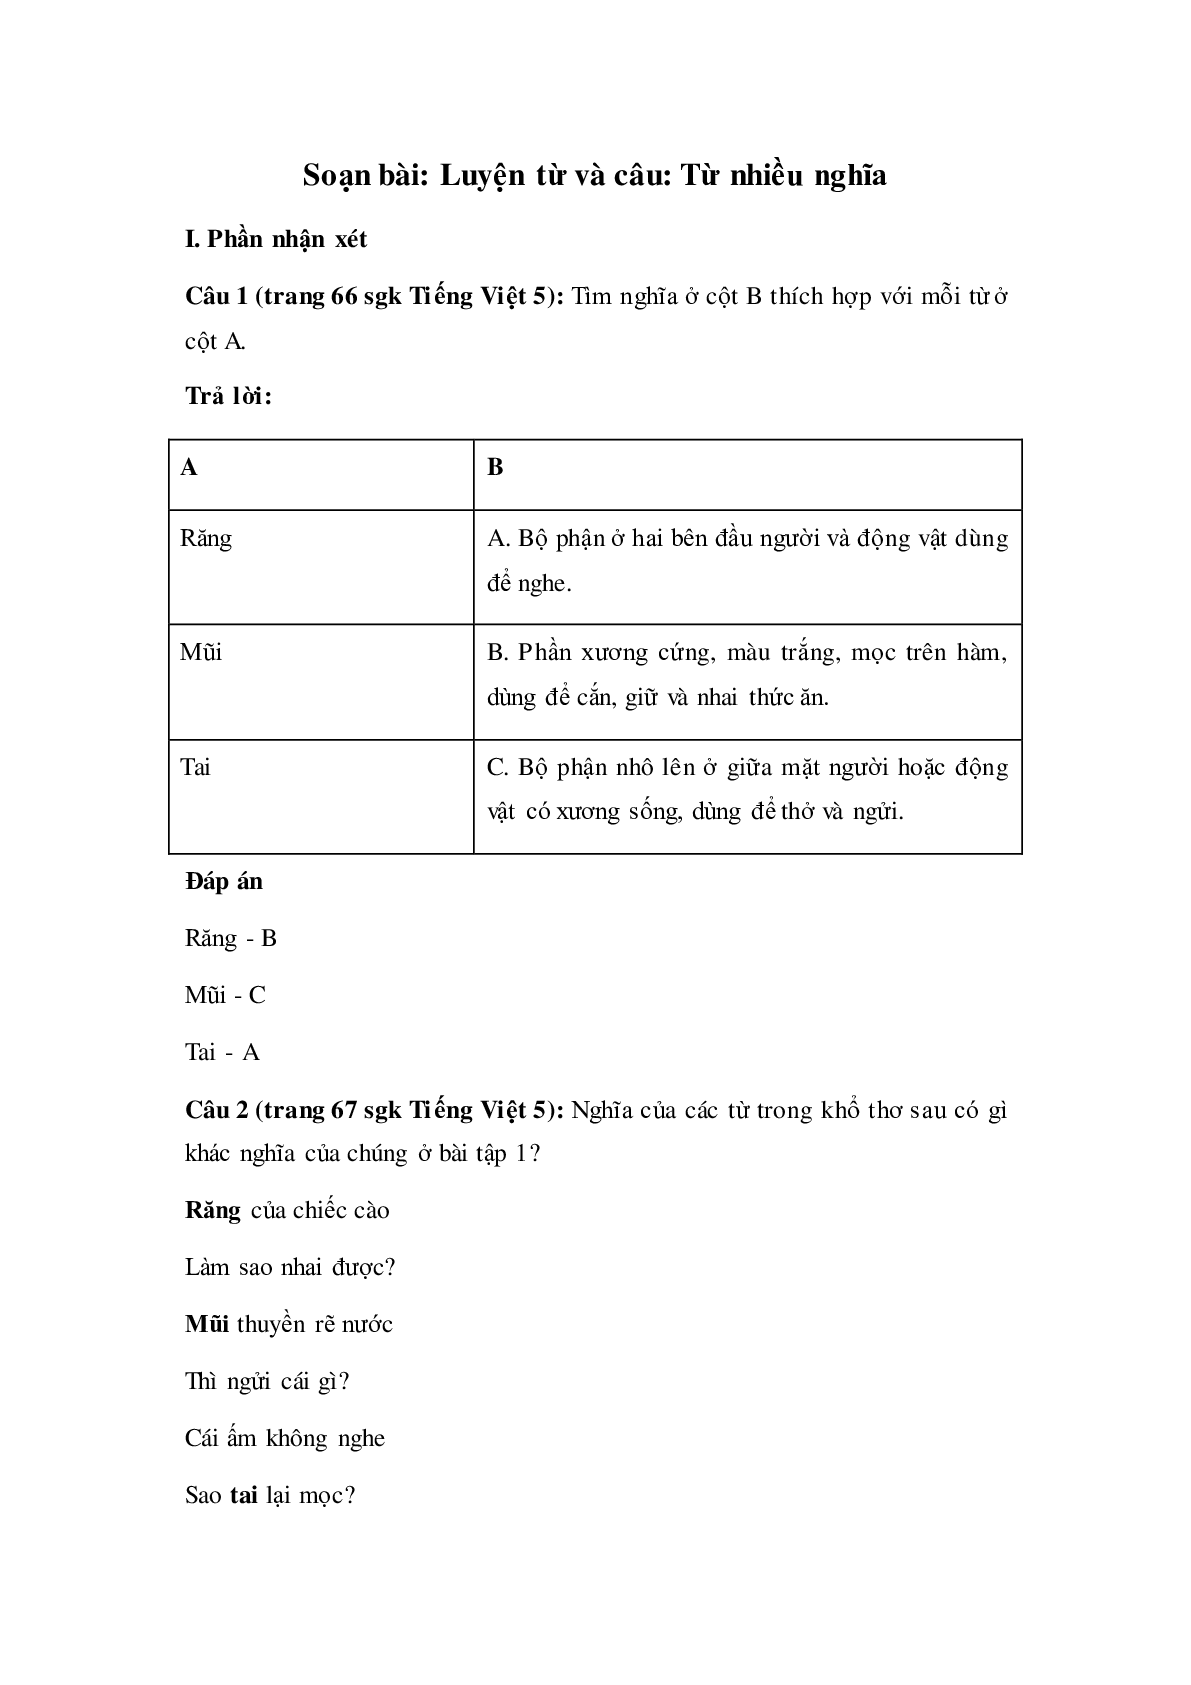 Soạn Tiếng Việt lớp 5: Luyện từ và câu; Từ nhiều nghĩa mới nhất (trang 1)